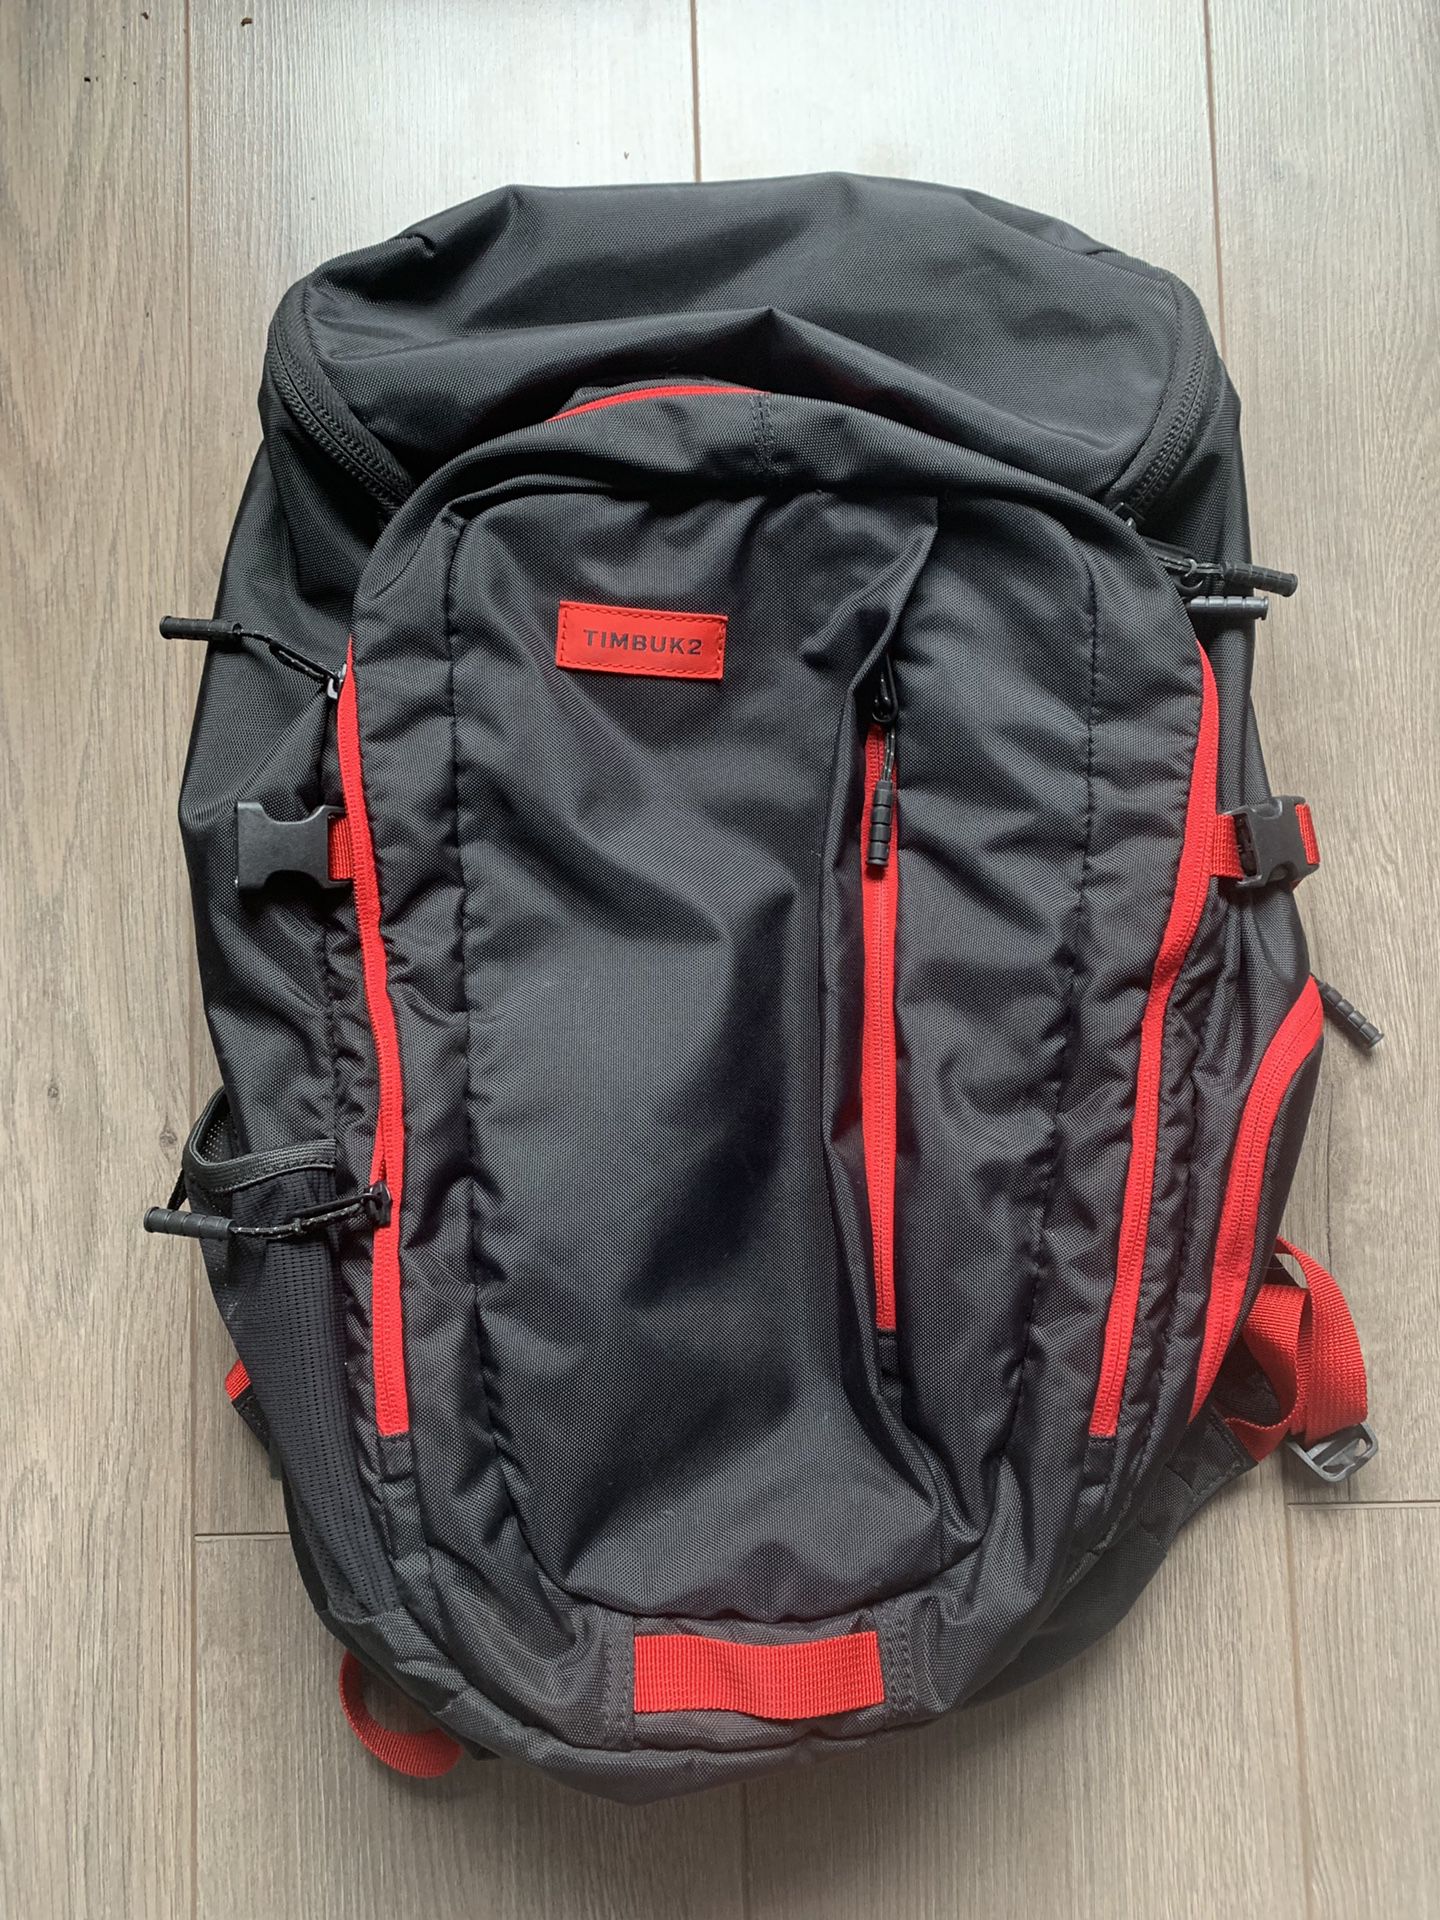 Timbuk2 backpack